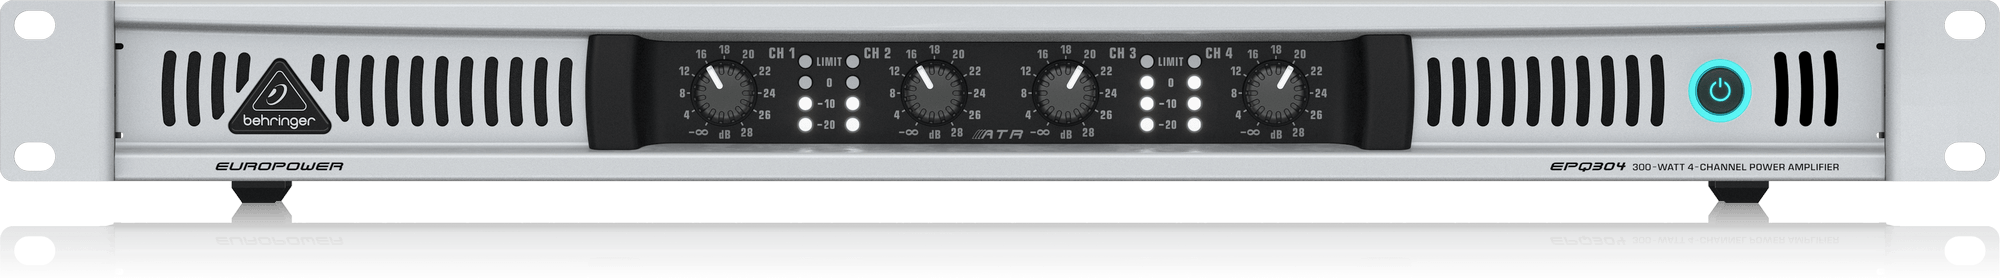 Europower EPQ304 Power Amplifier